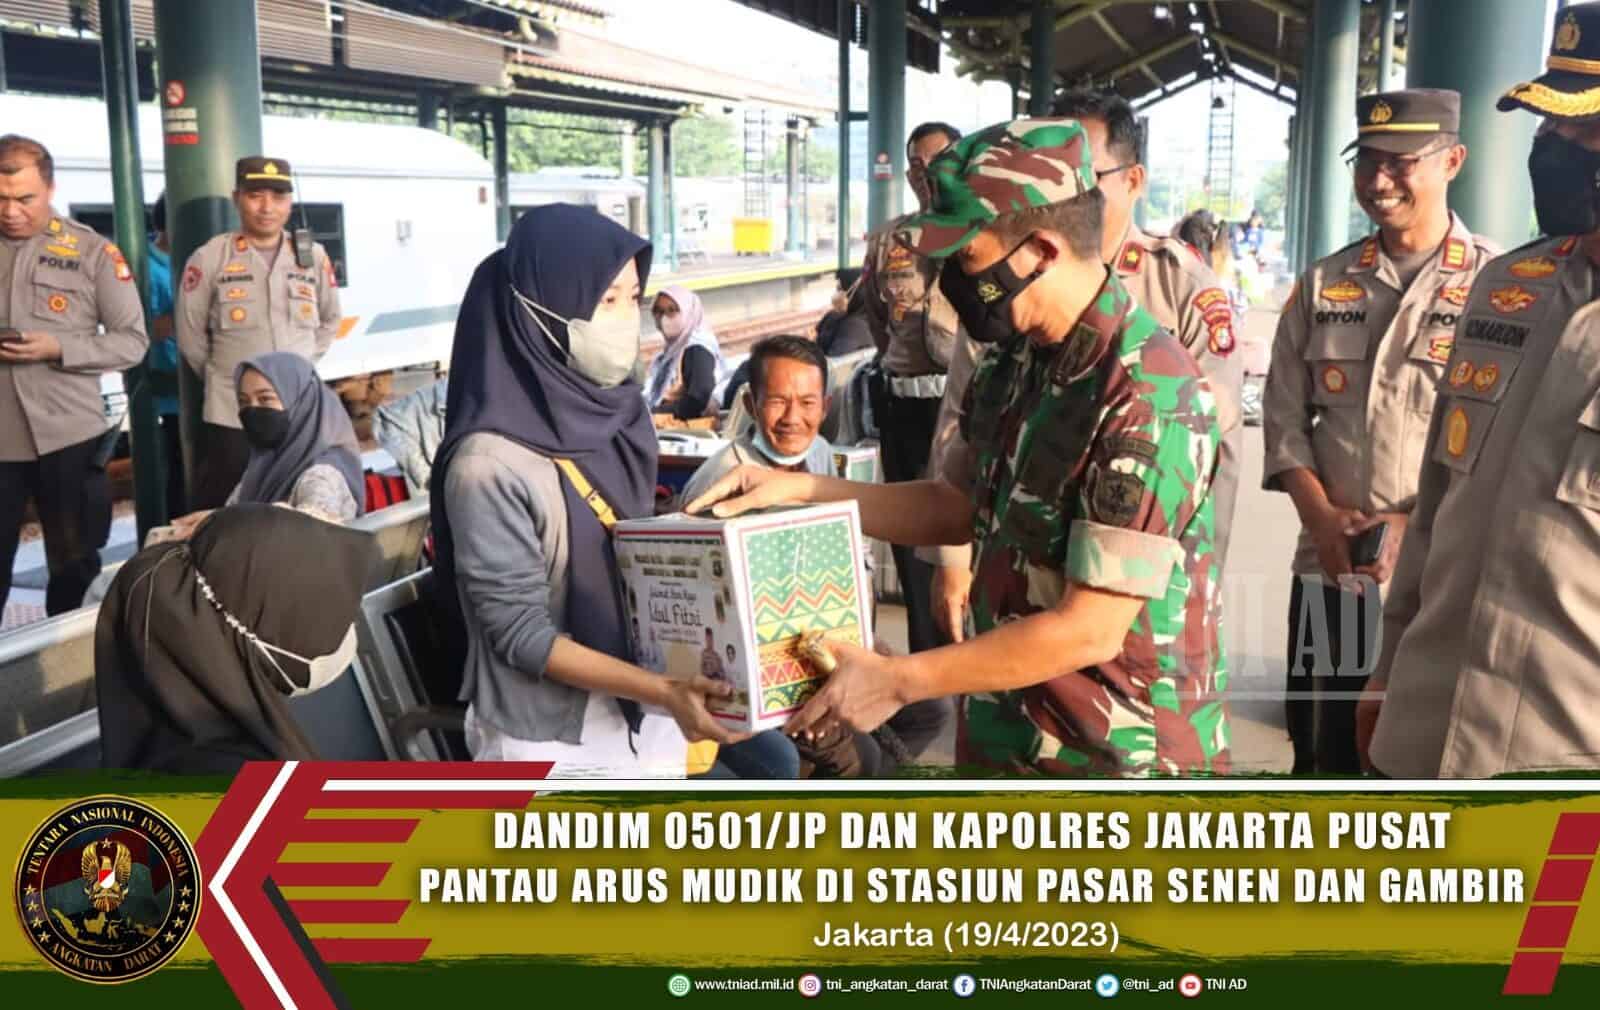 Dandim 0501/JP dan Kapolres Jakarta Pusat Pantau Arus Mudik di Stasiun Pasar Senen dan Gambir